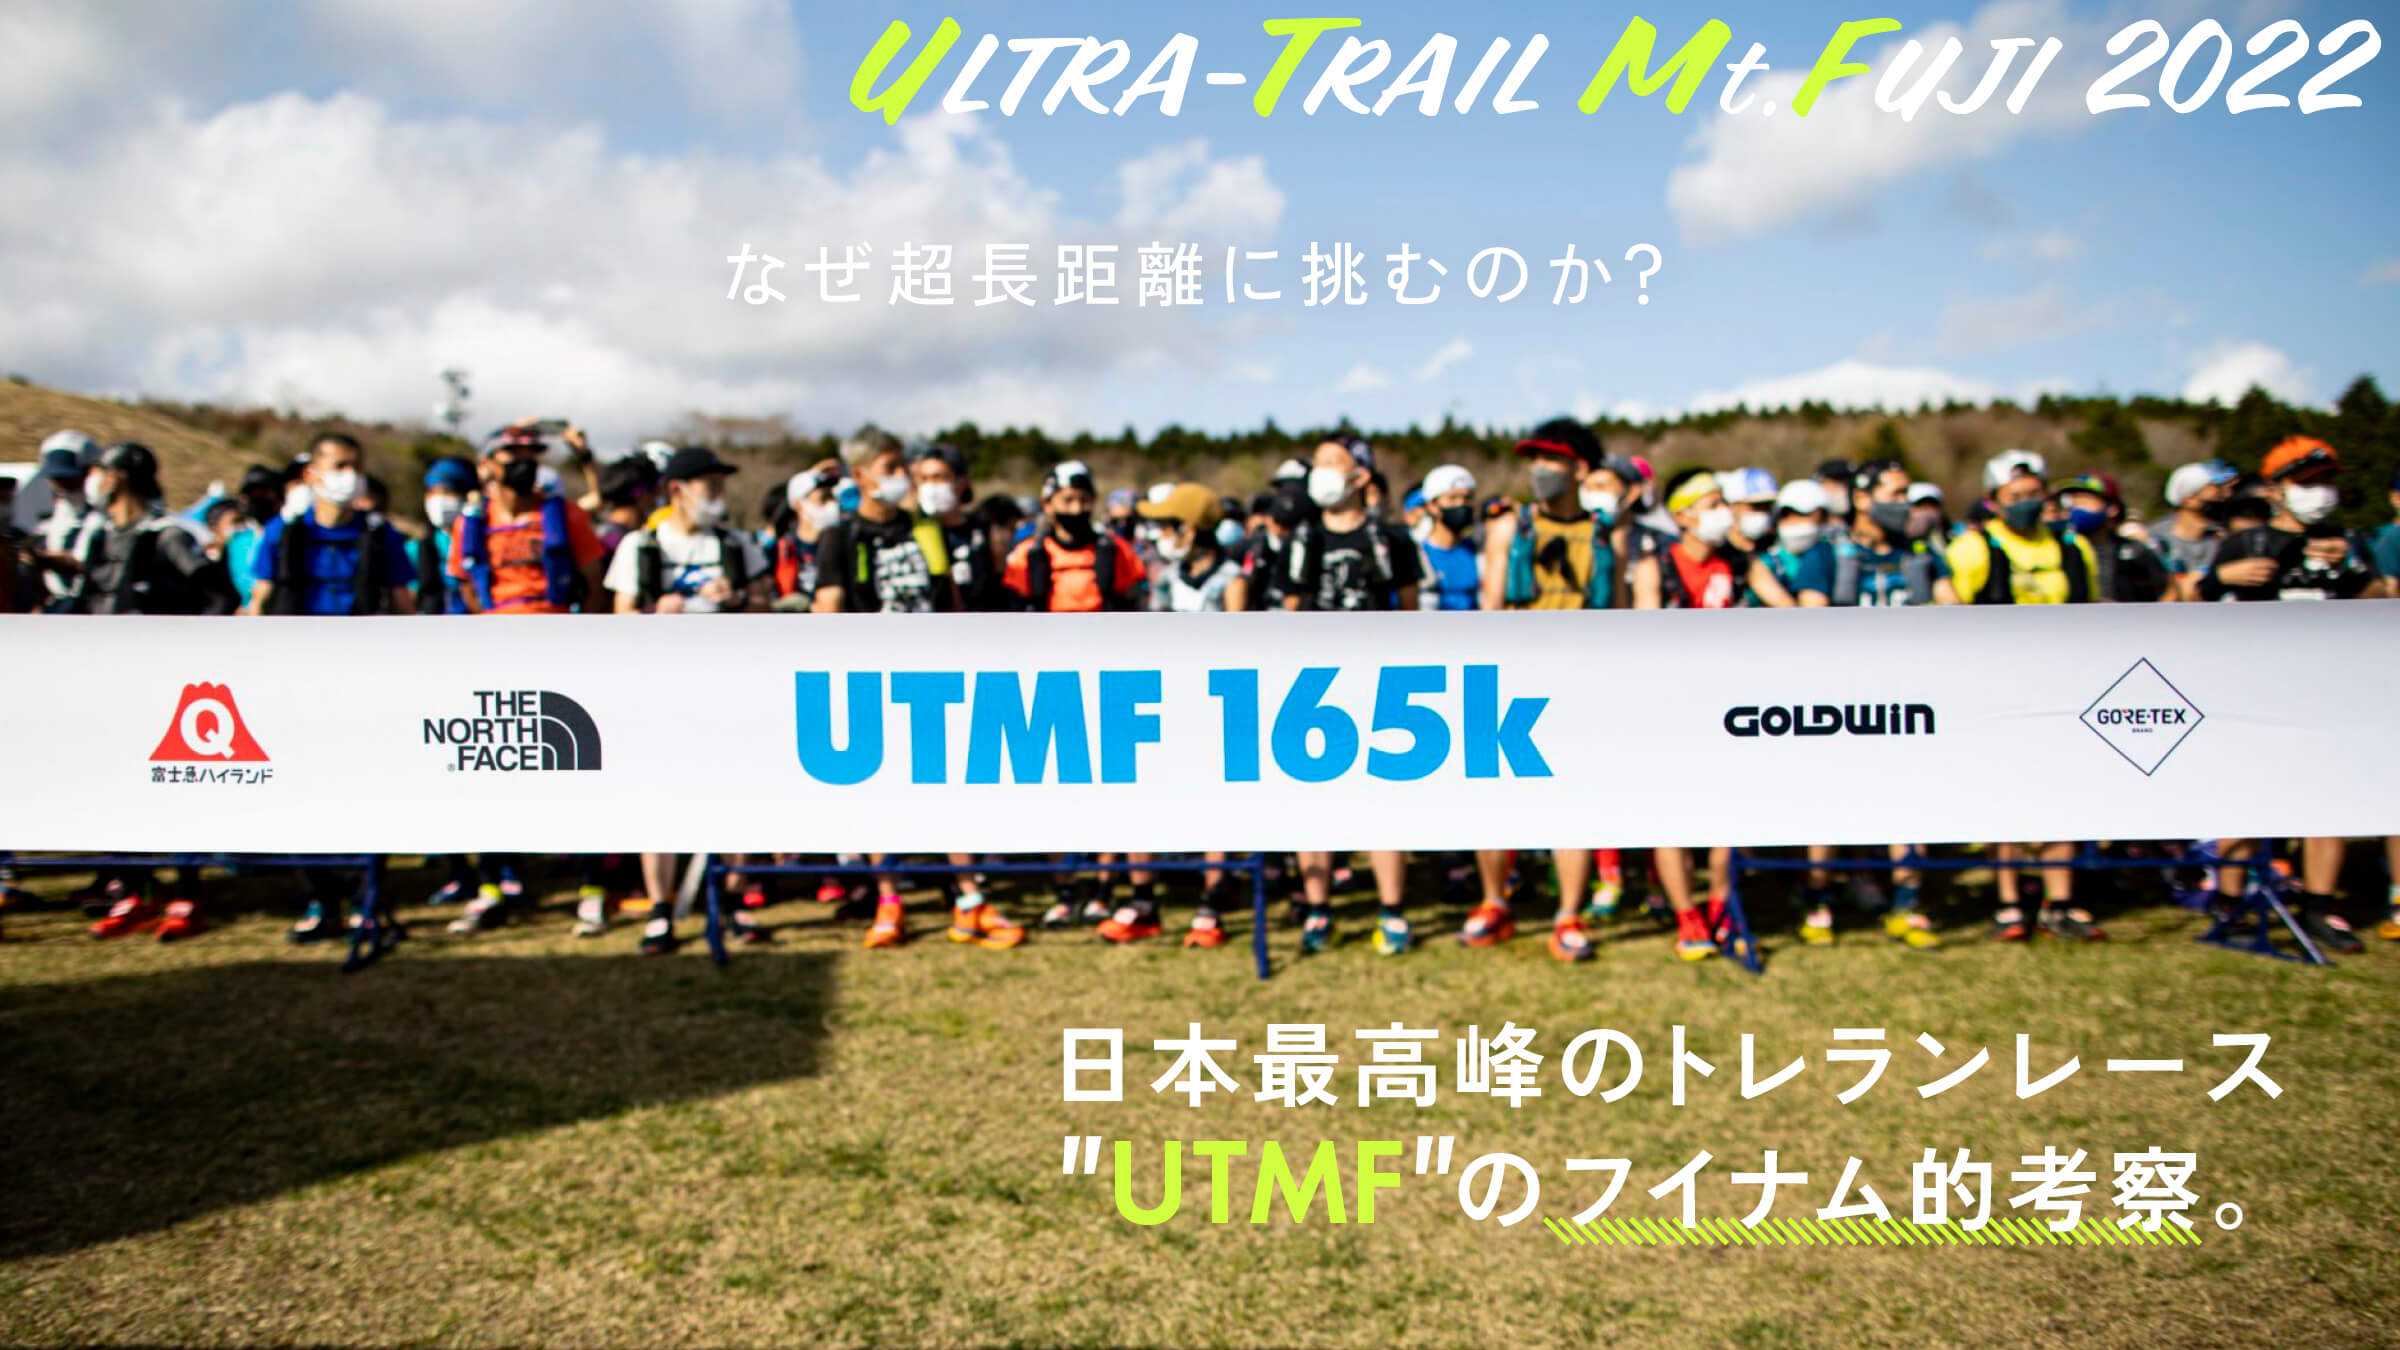 なぜ超長距離に挑むのか？ 日本最高峰のトレランレース「UTMF」のフイナム的考察。